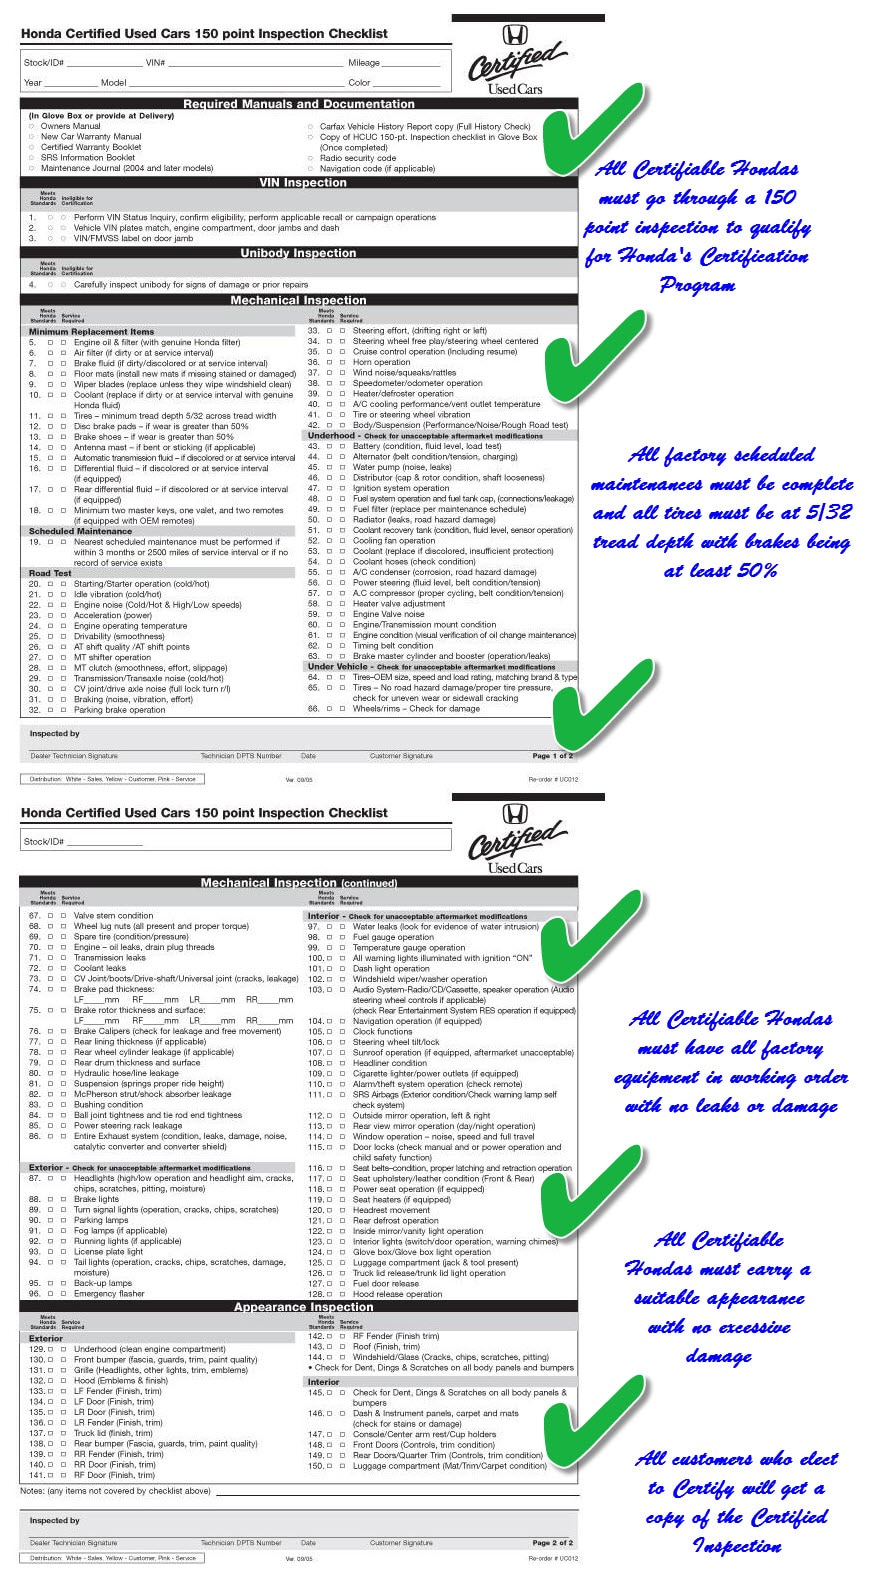 Honda certification checklist